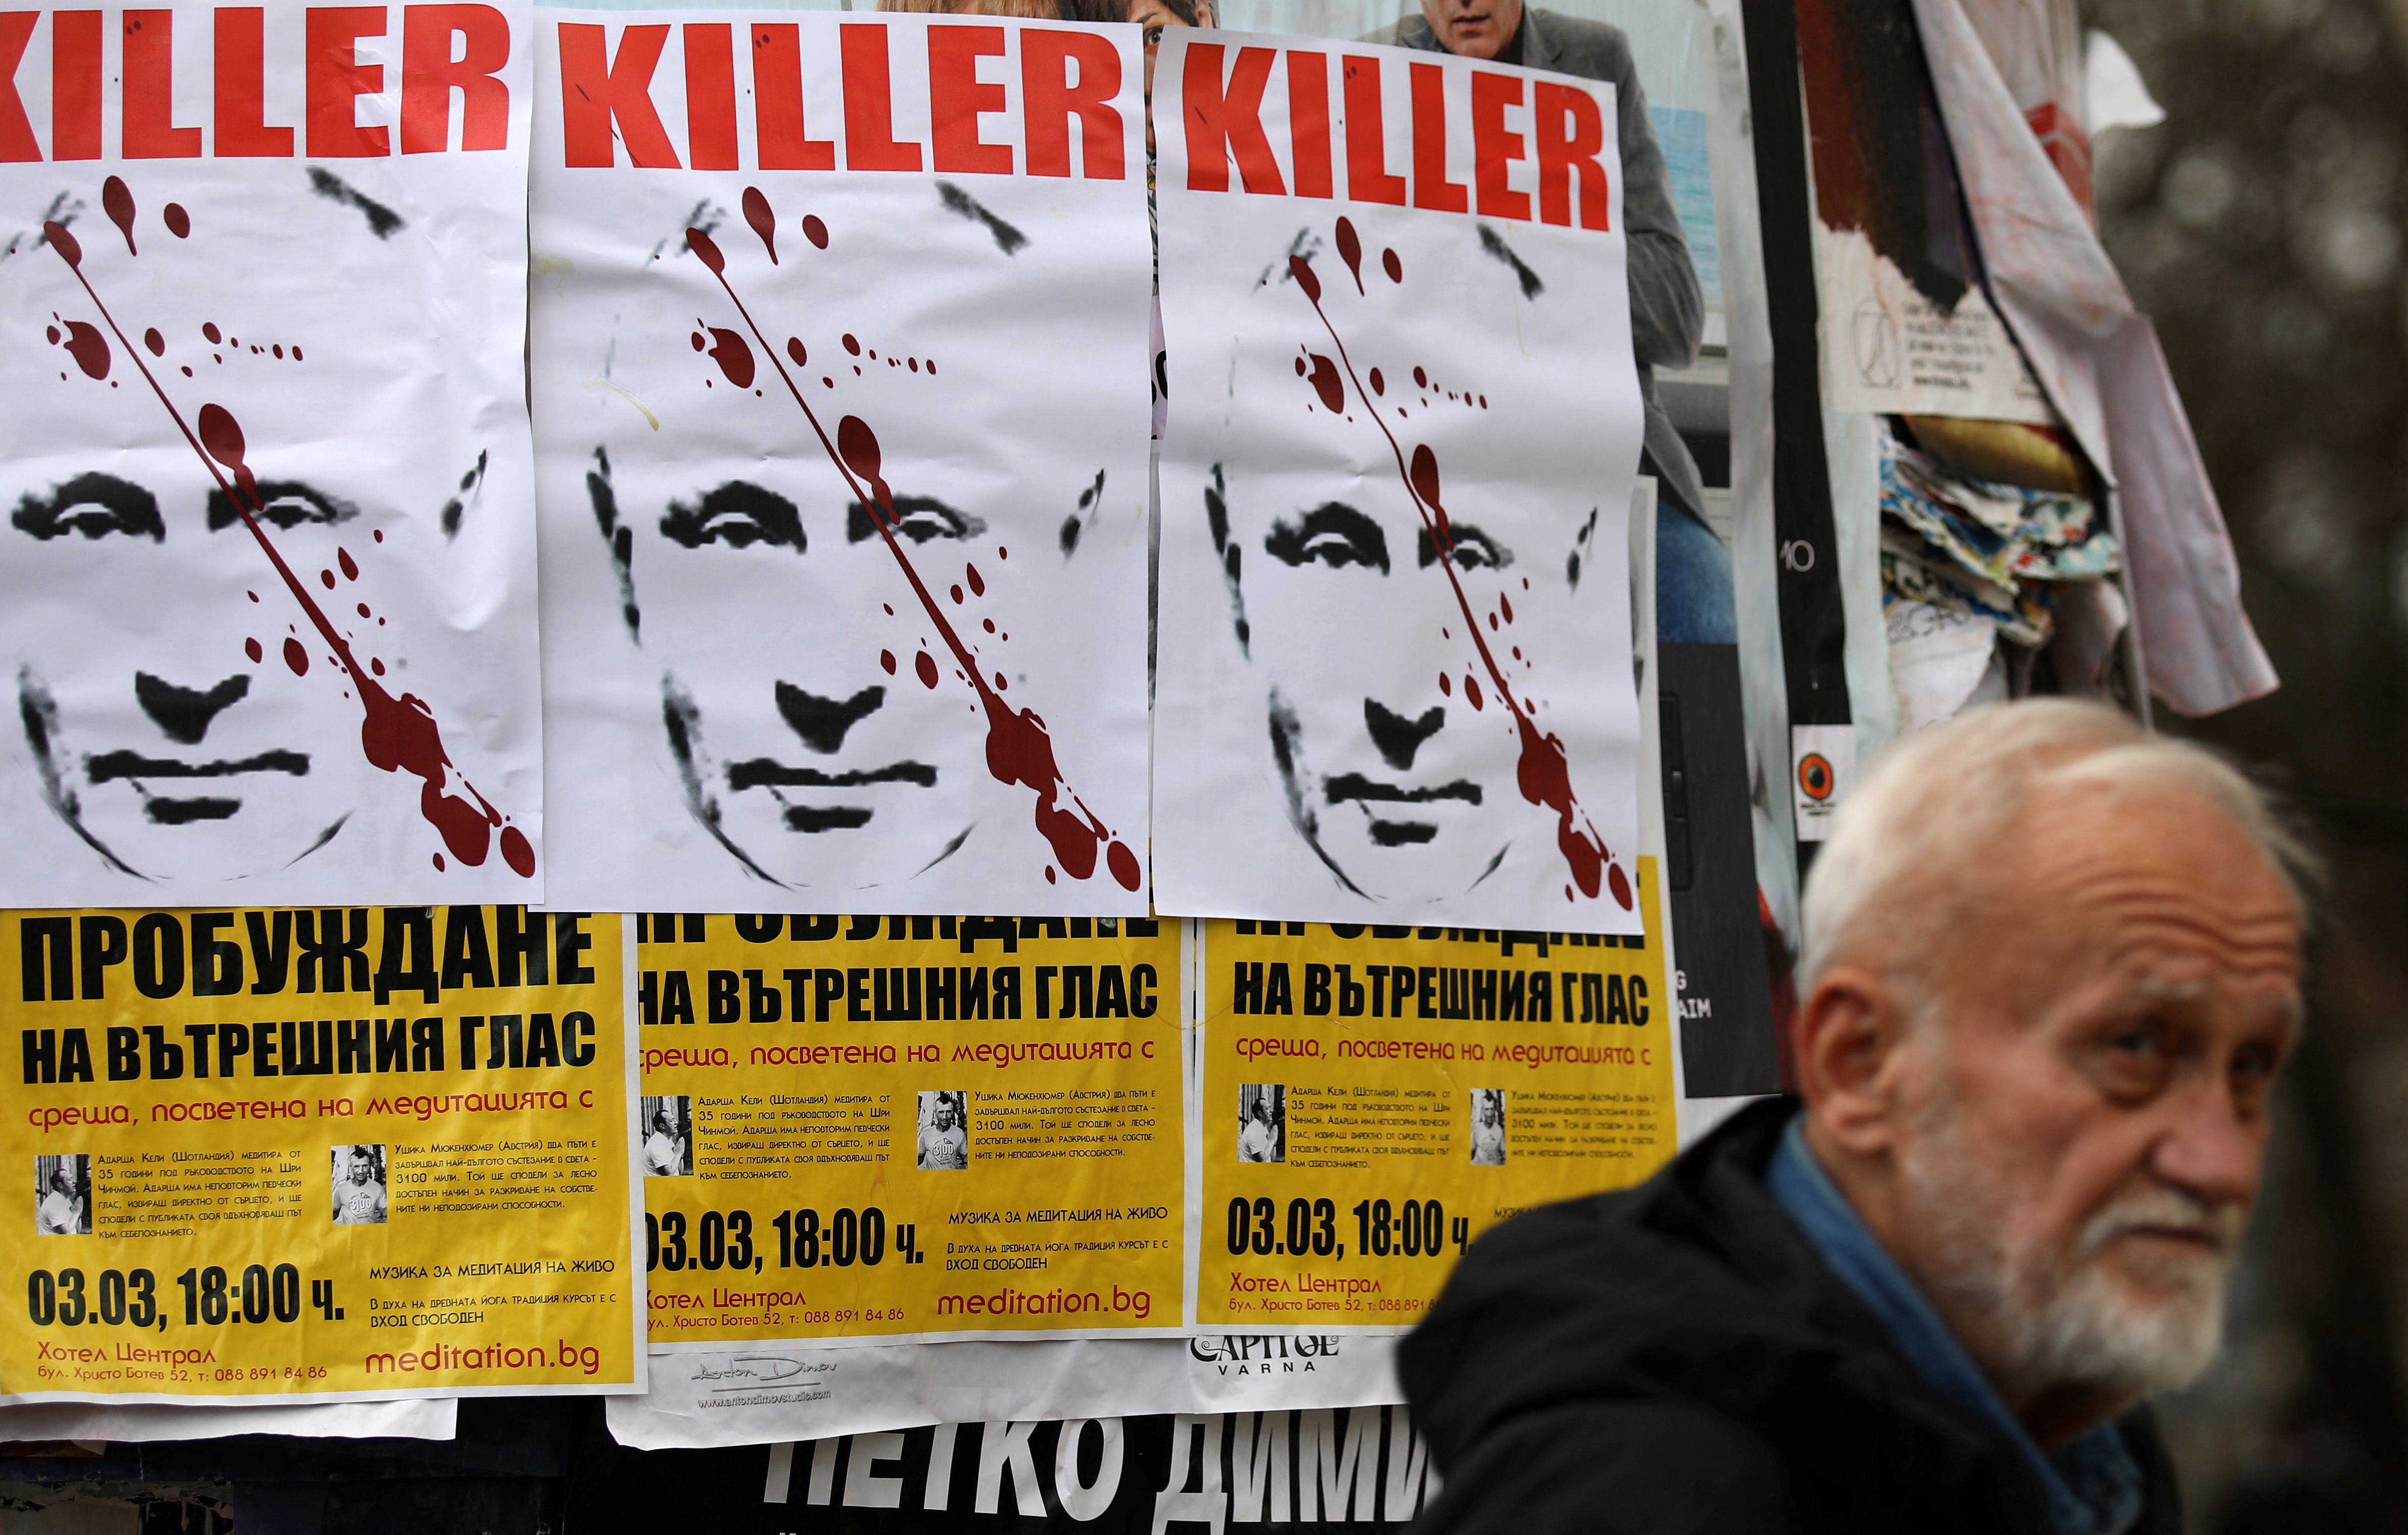 Un hombre pasa junto a carteles con la imagen del presidente ruso Vladimir Putin, tras la operación militar de Rusia en el este de Ucrania, en Sofía, Bulgaria, el 24 de febrero de 2022 (Reuters)